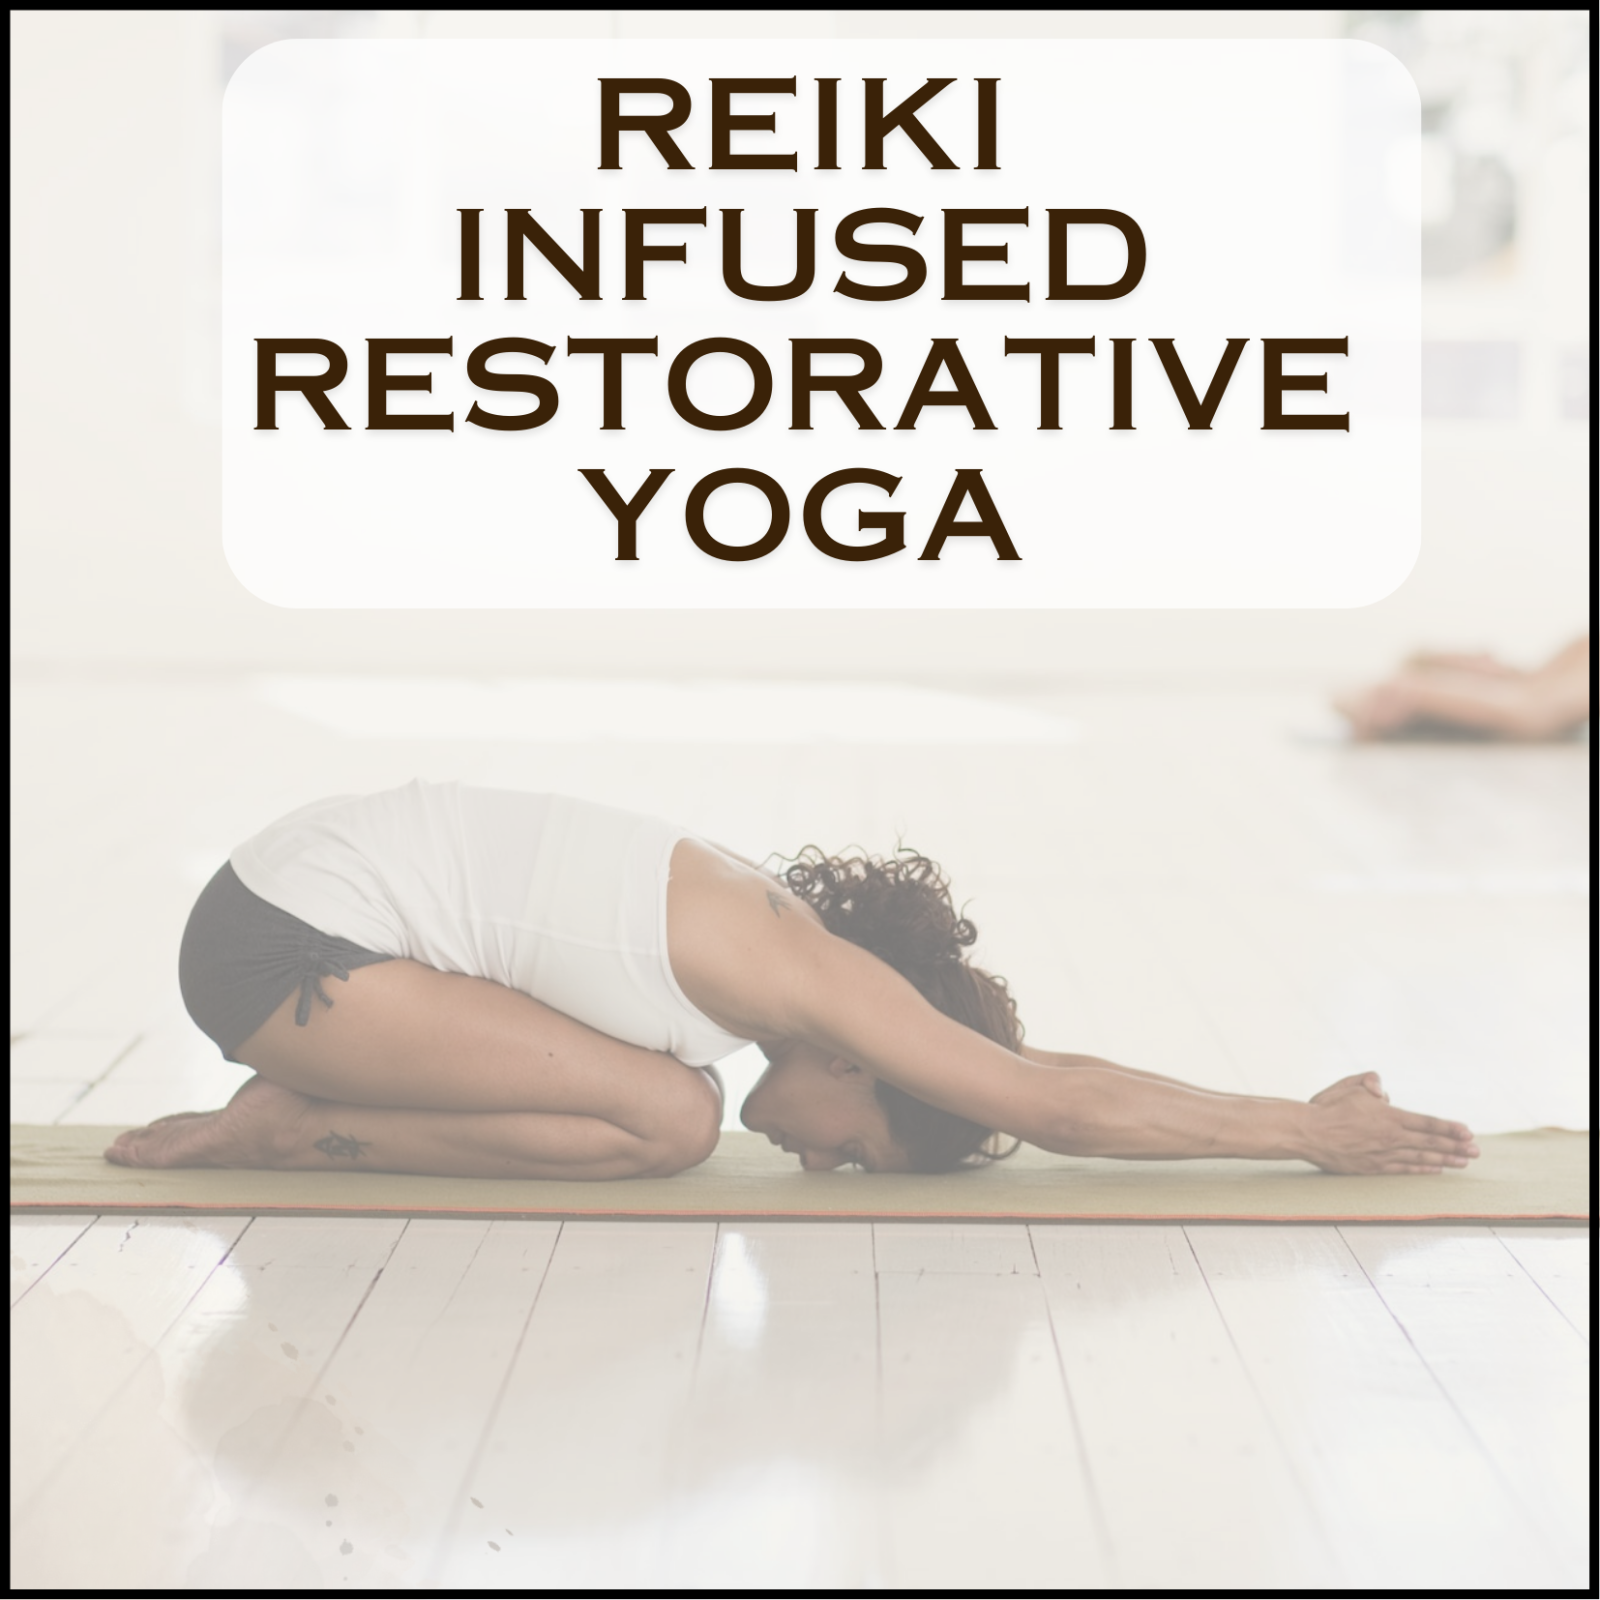 Reiki Infused Restorative Yoga